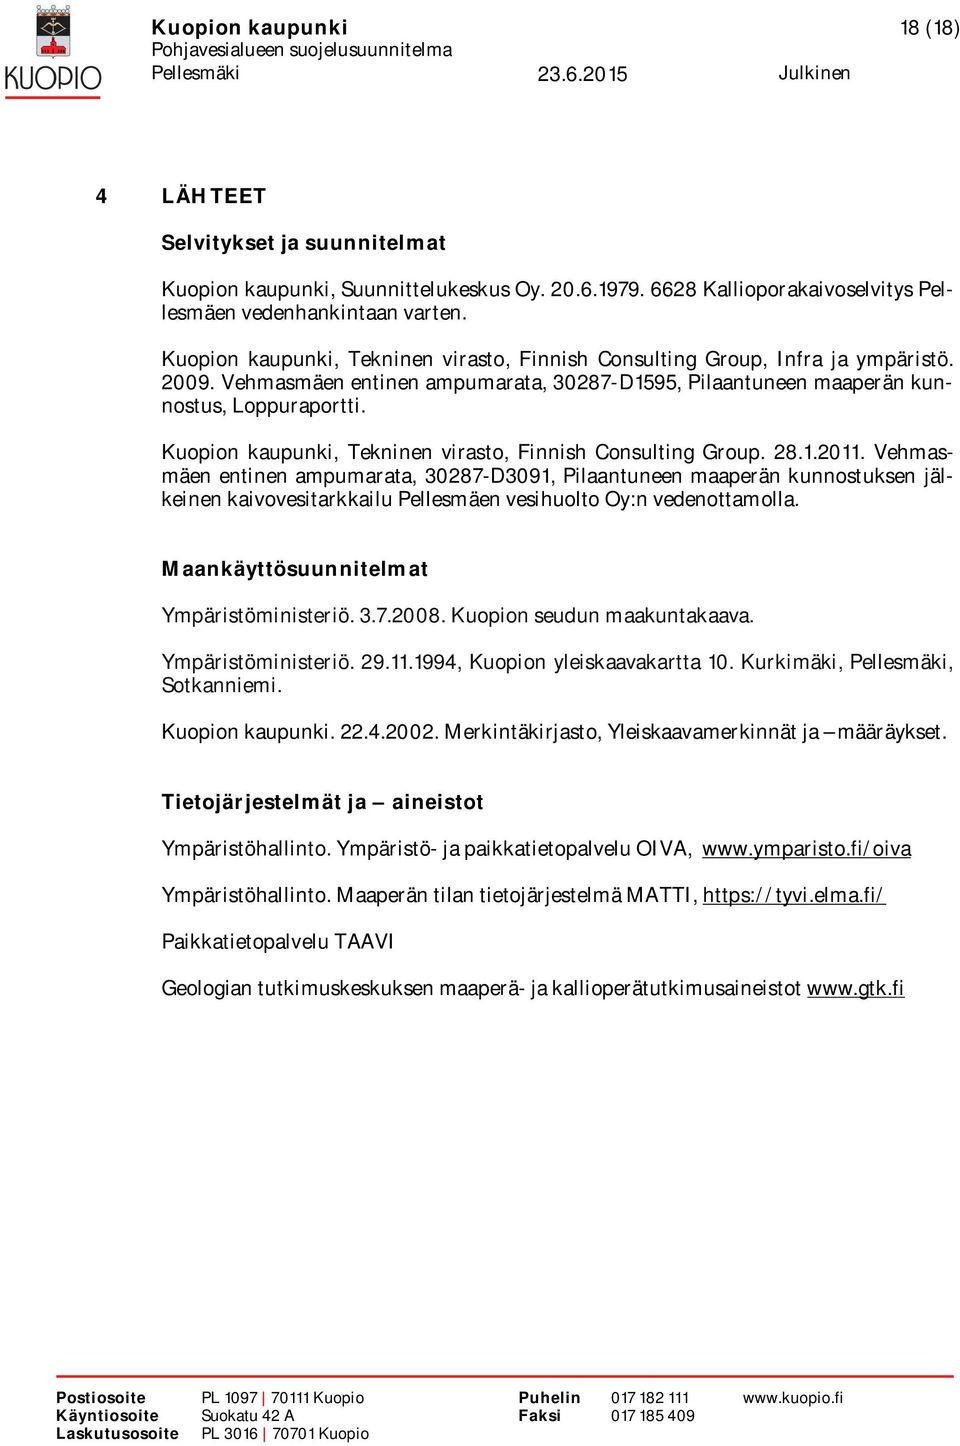 Kuopion kaupunki, Tekninen virasto, Finnish Consulting Group. 28.1.2011.